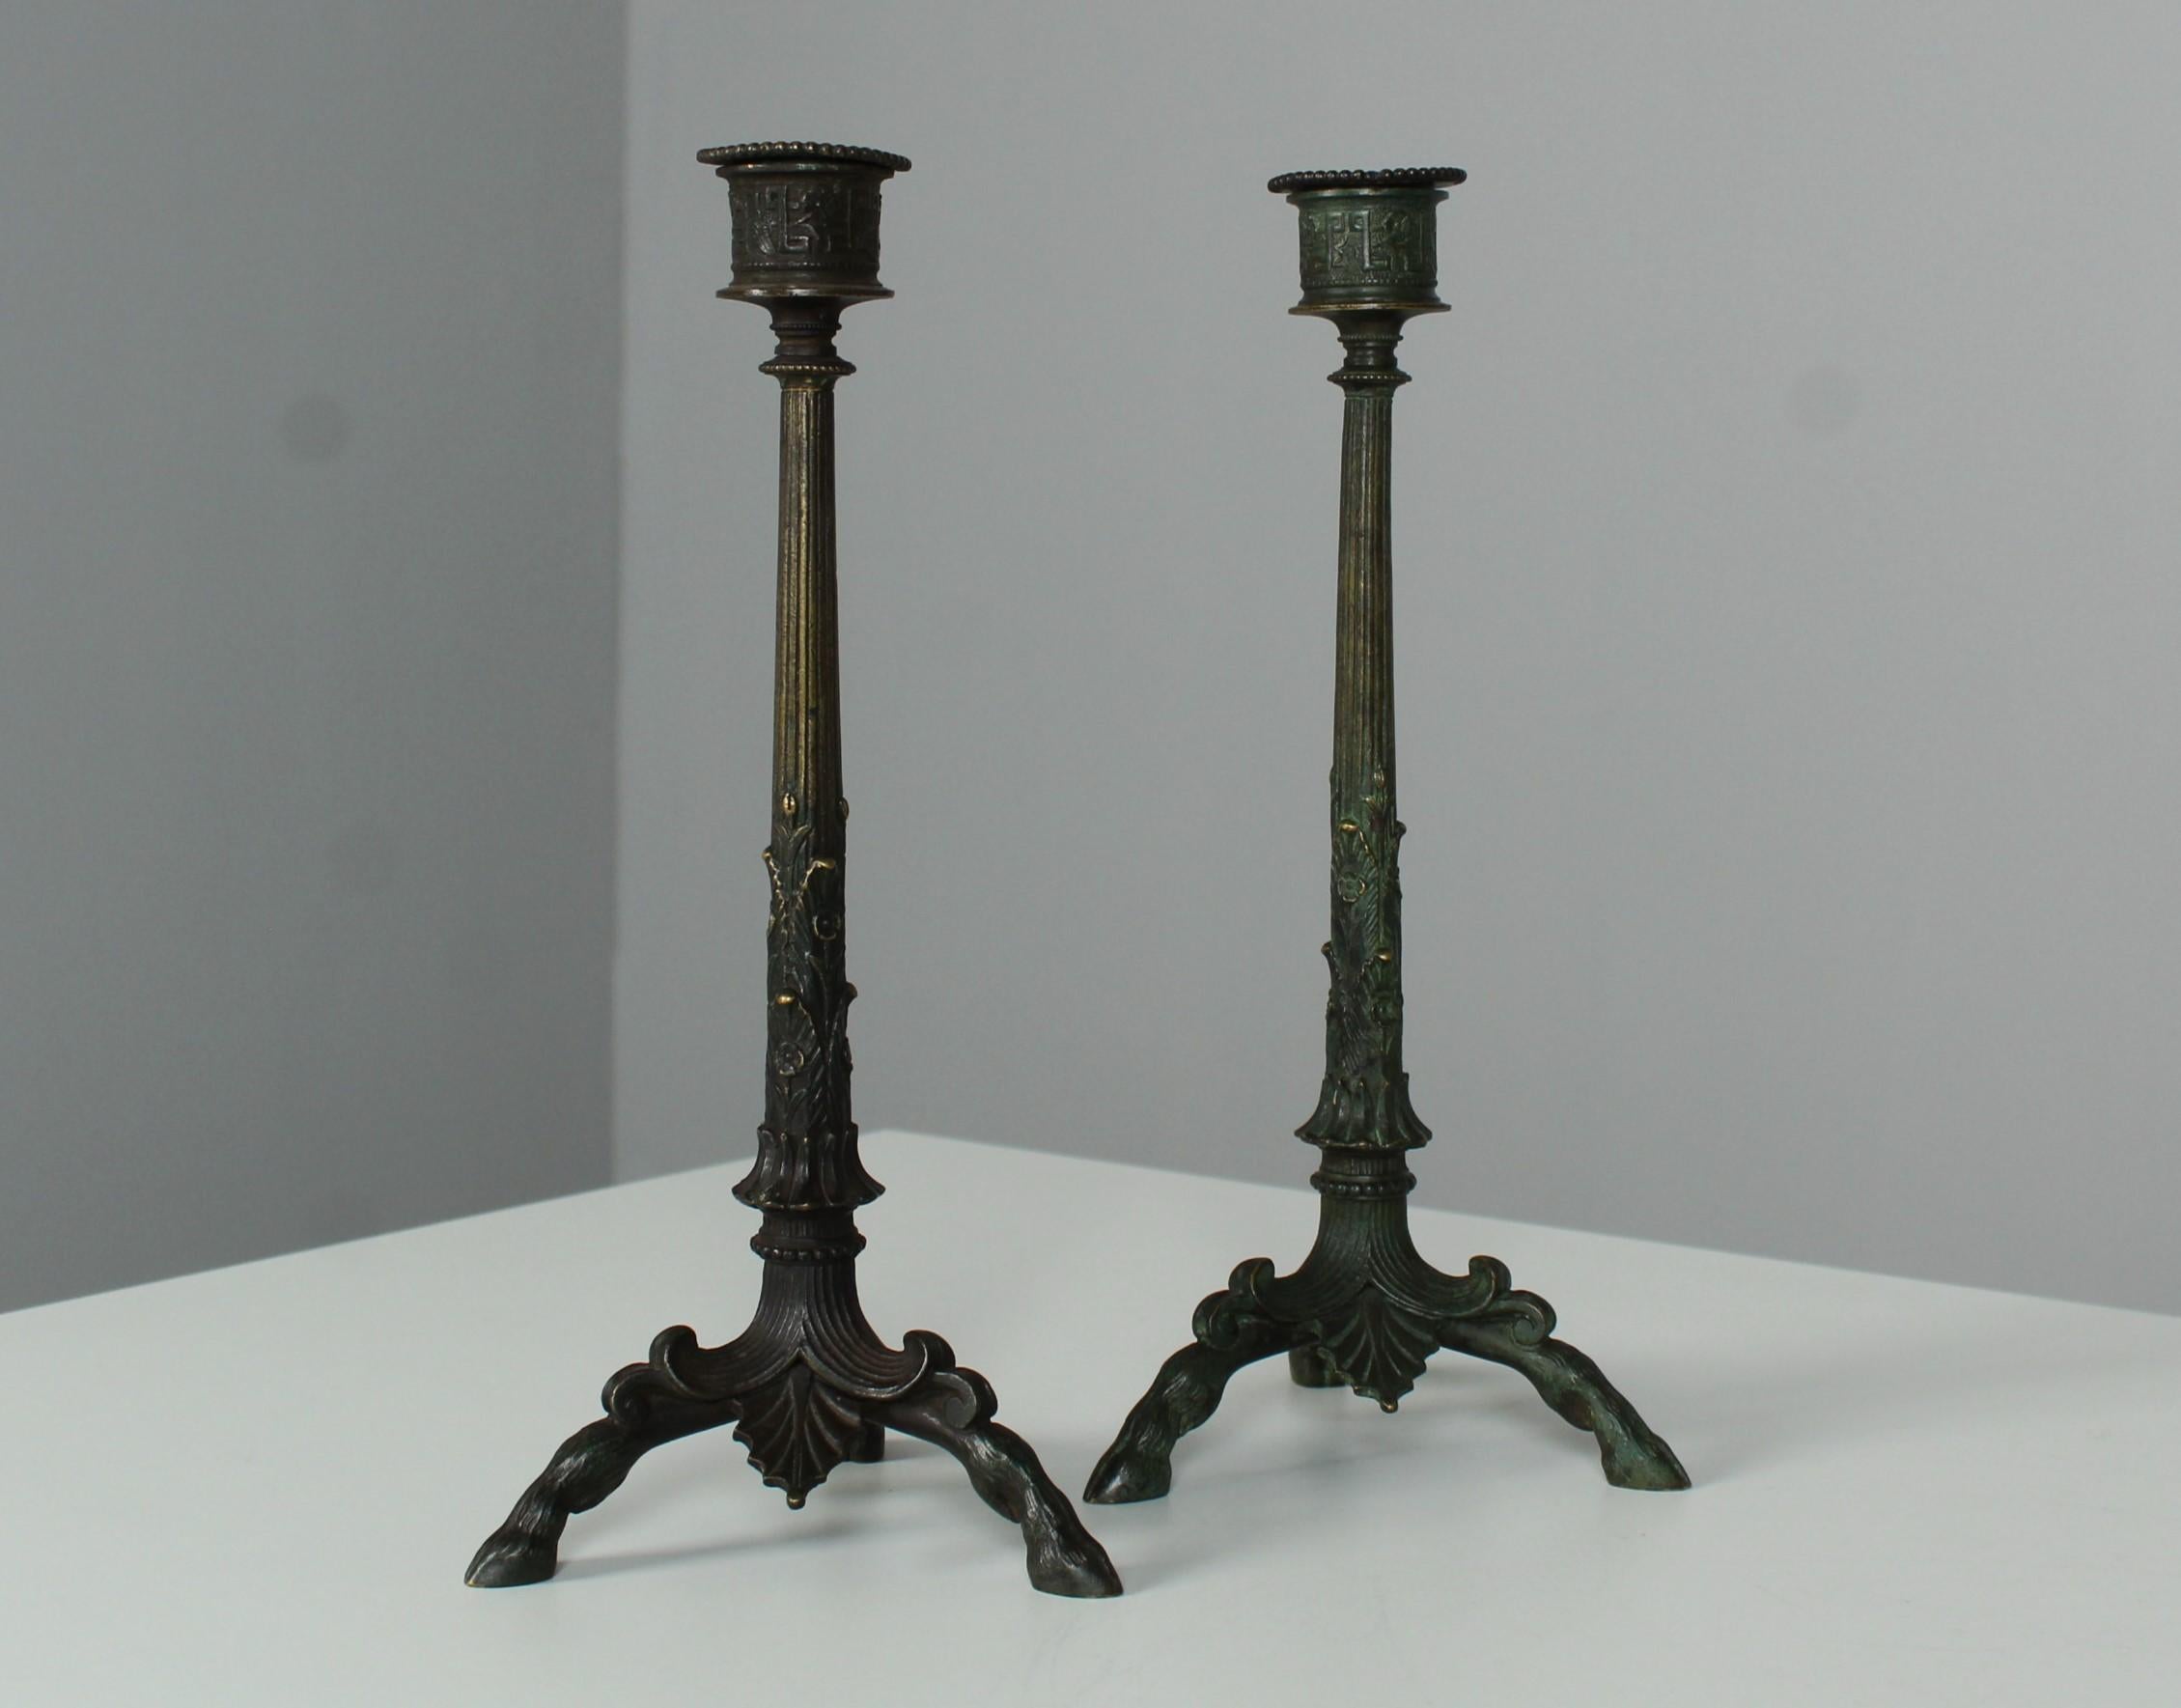 Belle paire de chandeliers en bronze, France, fin du 19e siècle.
Merveilleux ornements et trois pieds représentant des sabots de cerf.
Bronze patiné.